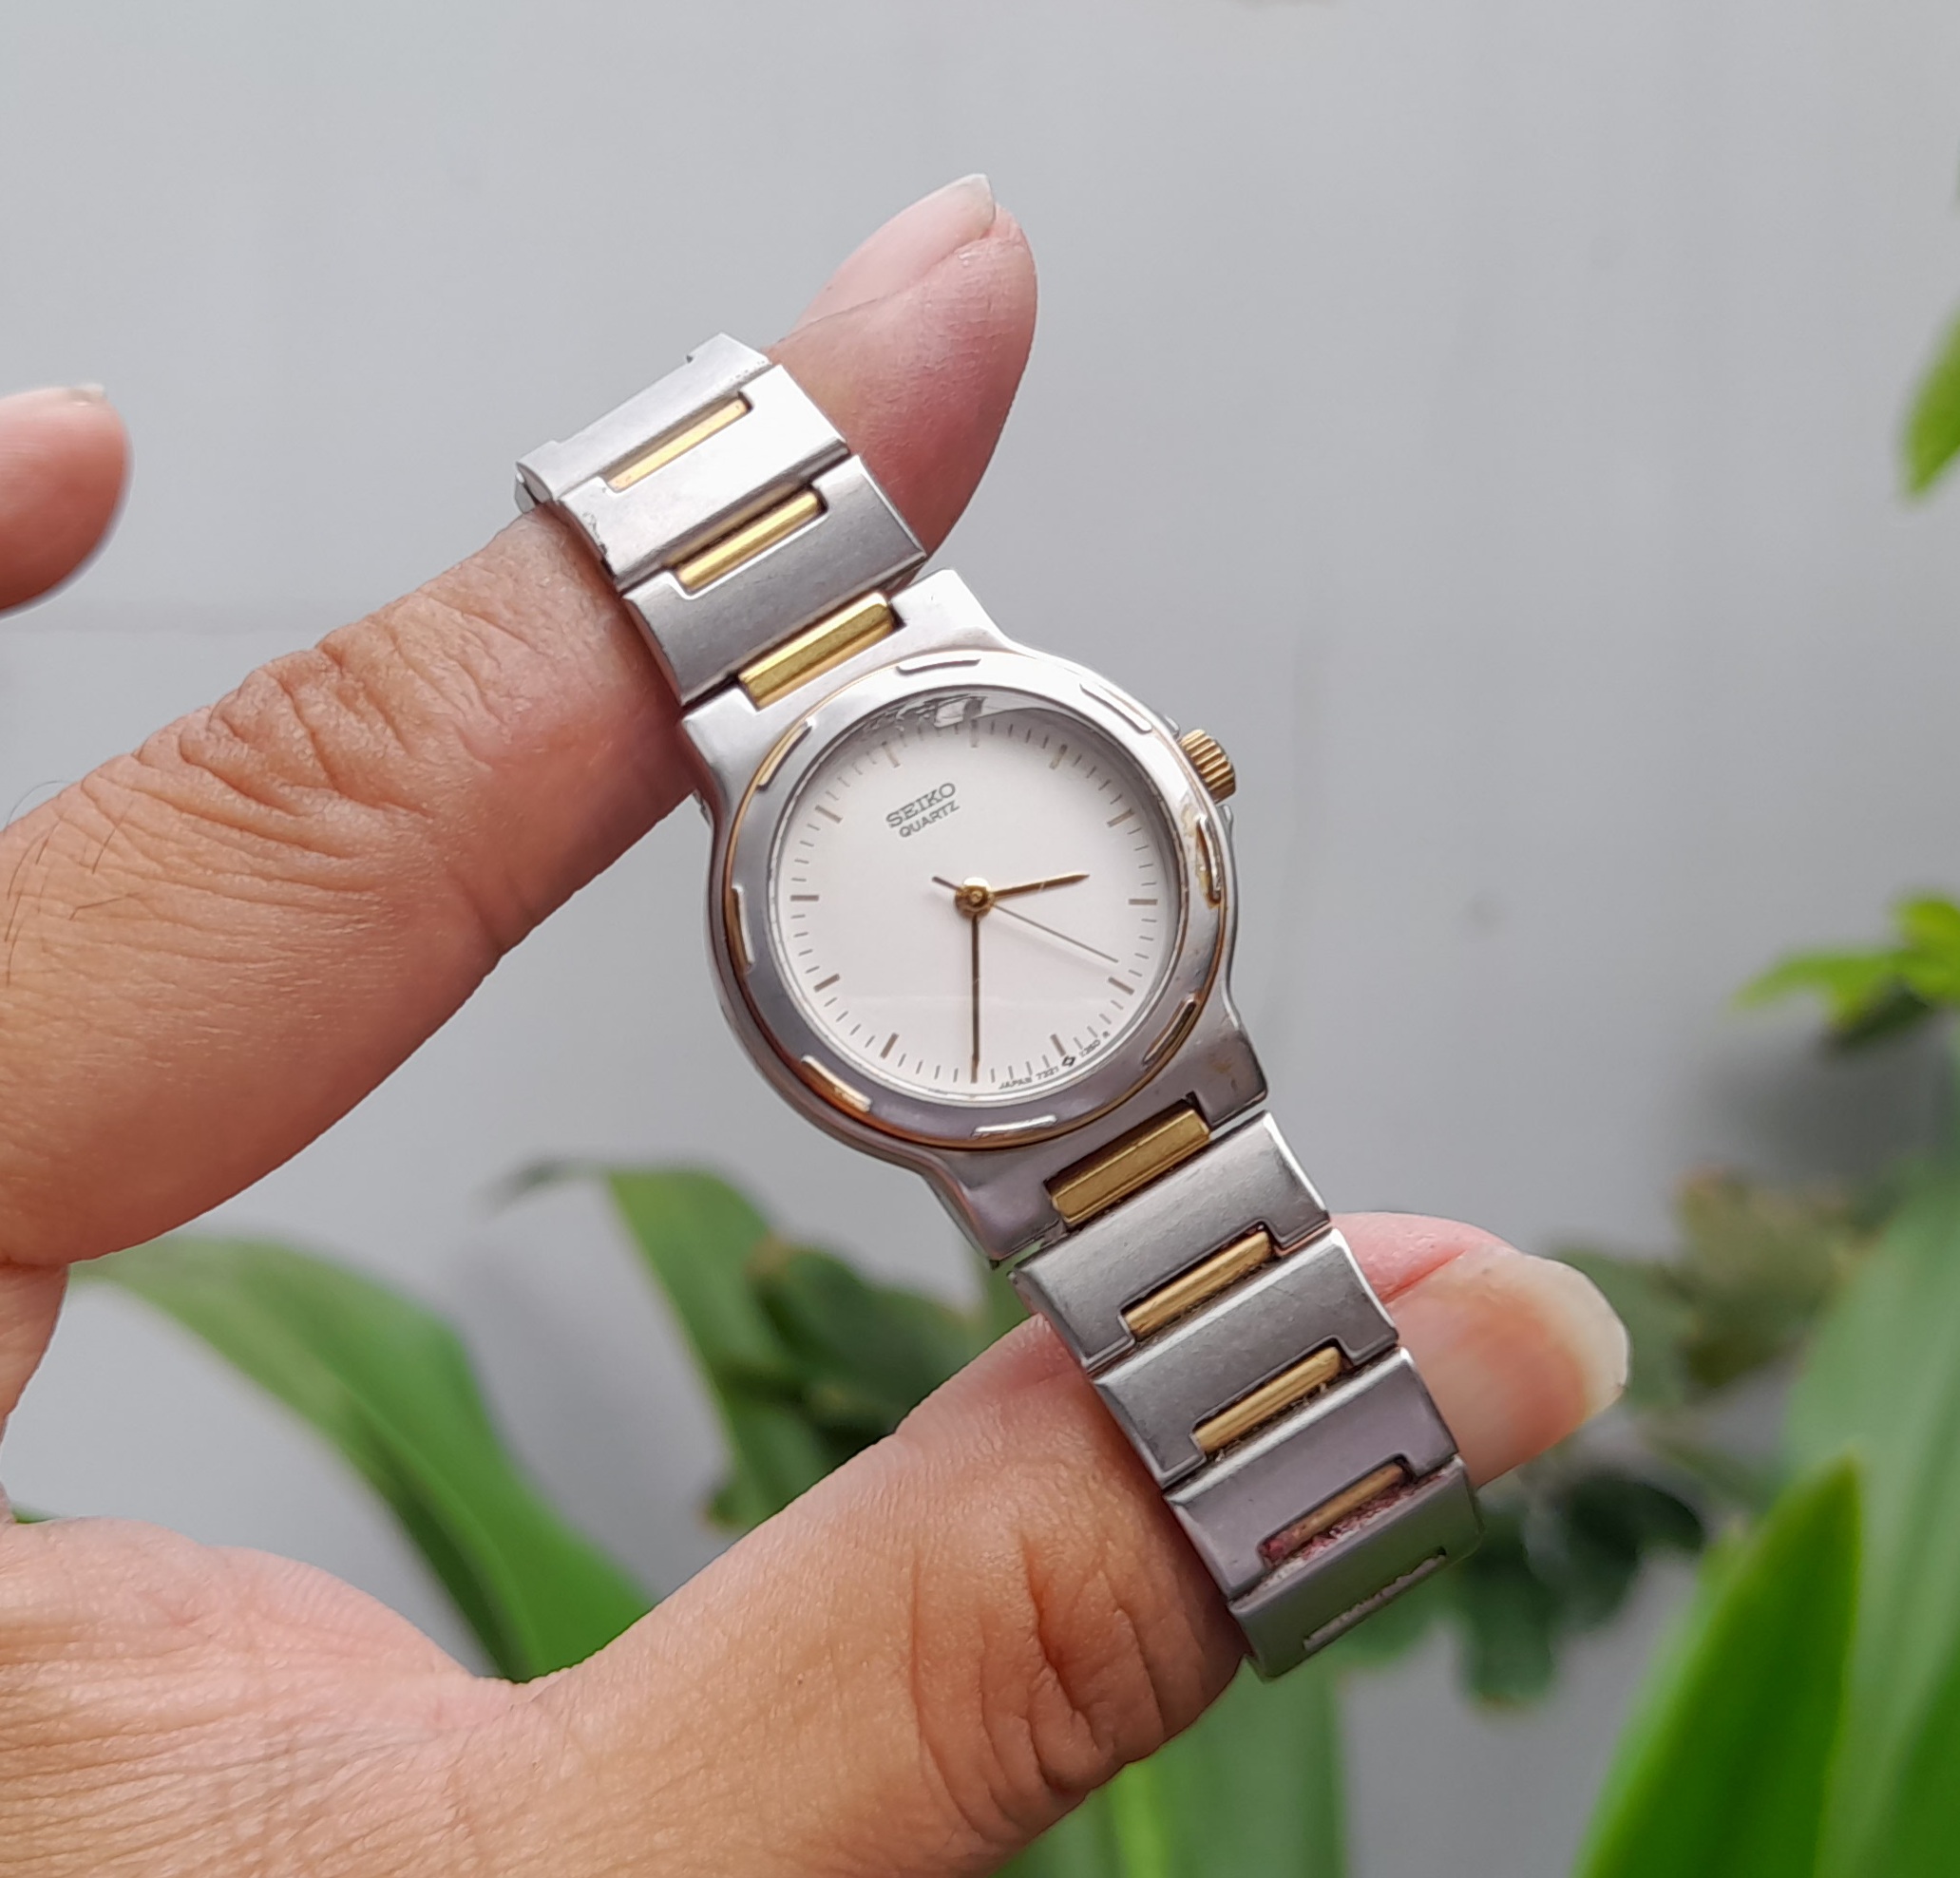 Đồng hồ Nữ SEIKO chuẩn hãng Japan, phối thép và vàng sang trọng